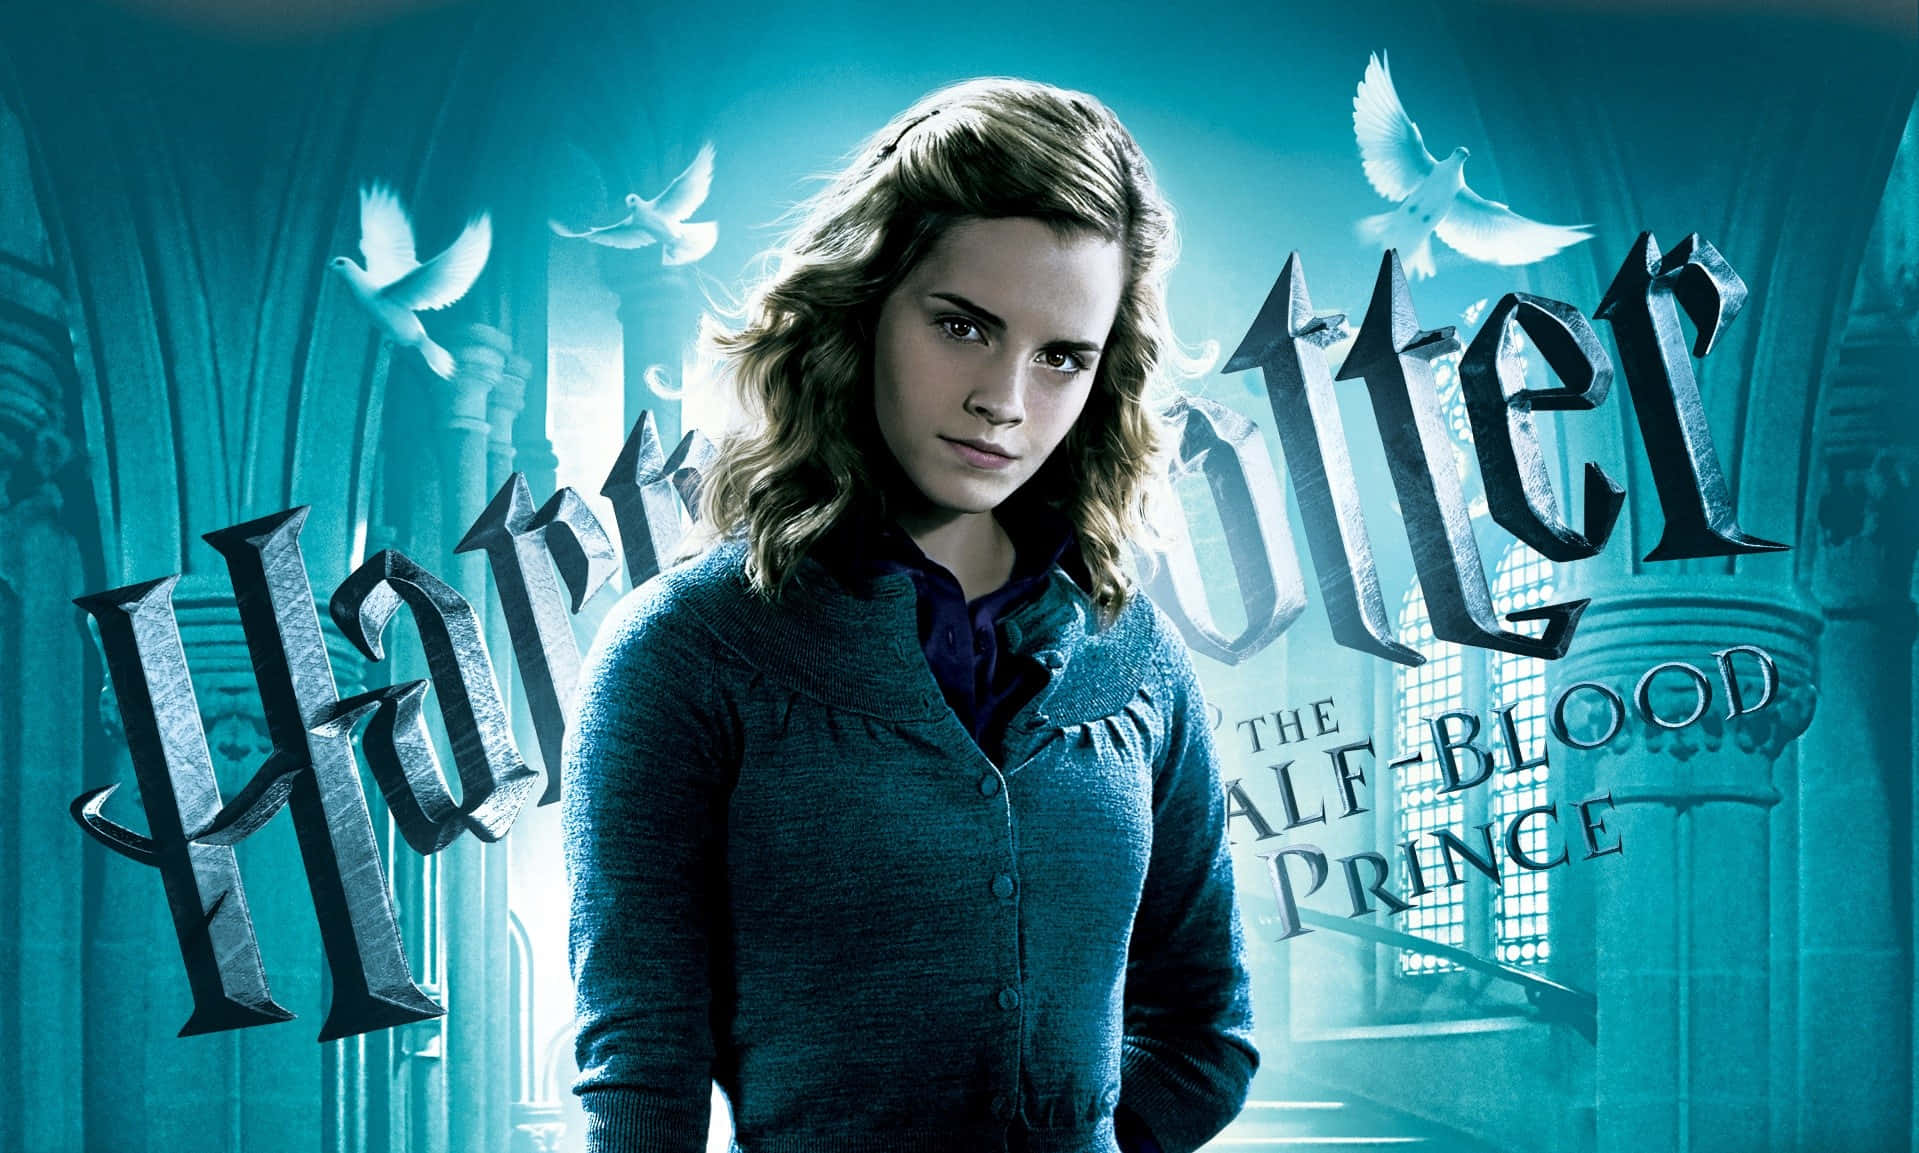 Harry Potter Landscape Hermione Granger Half-Blood Prince Wallpaper